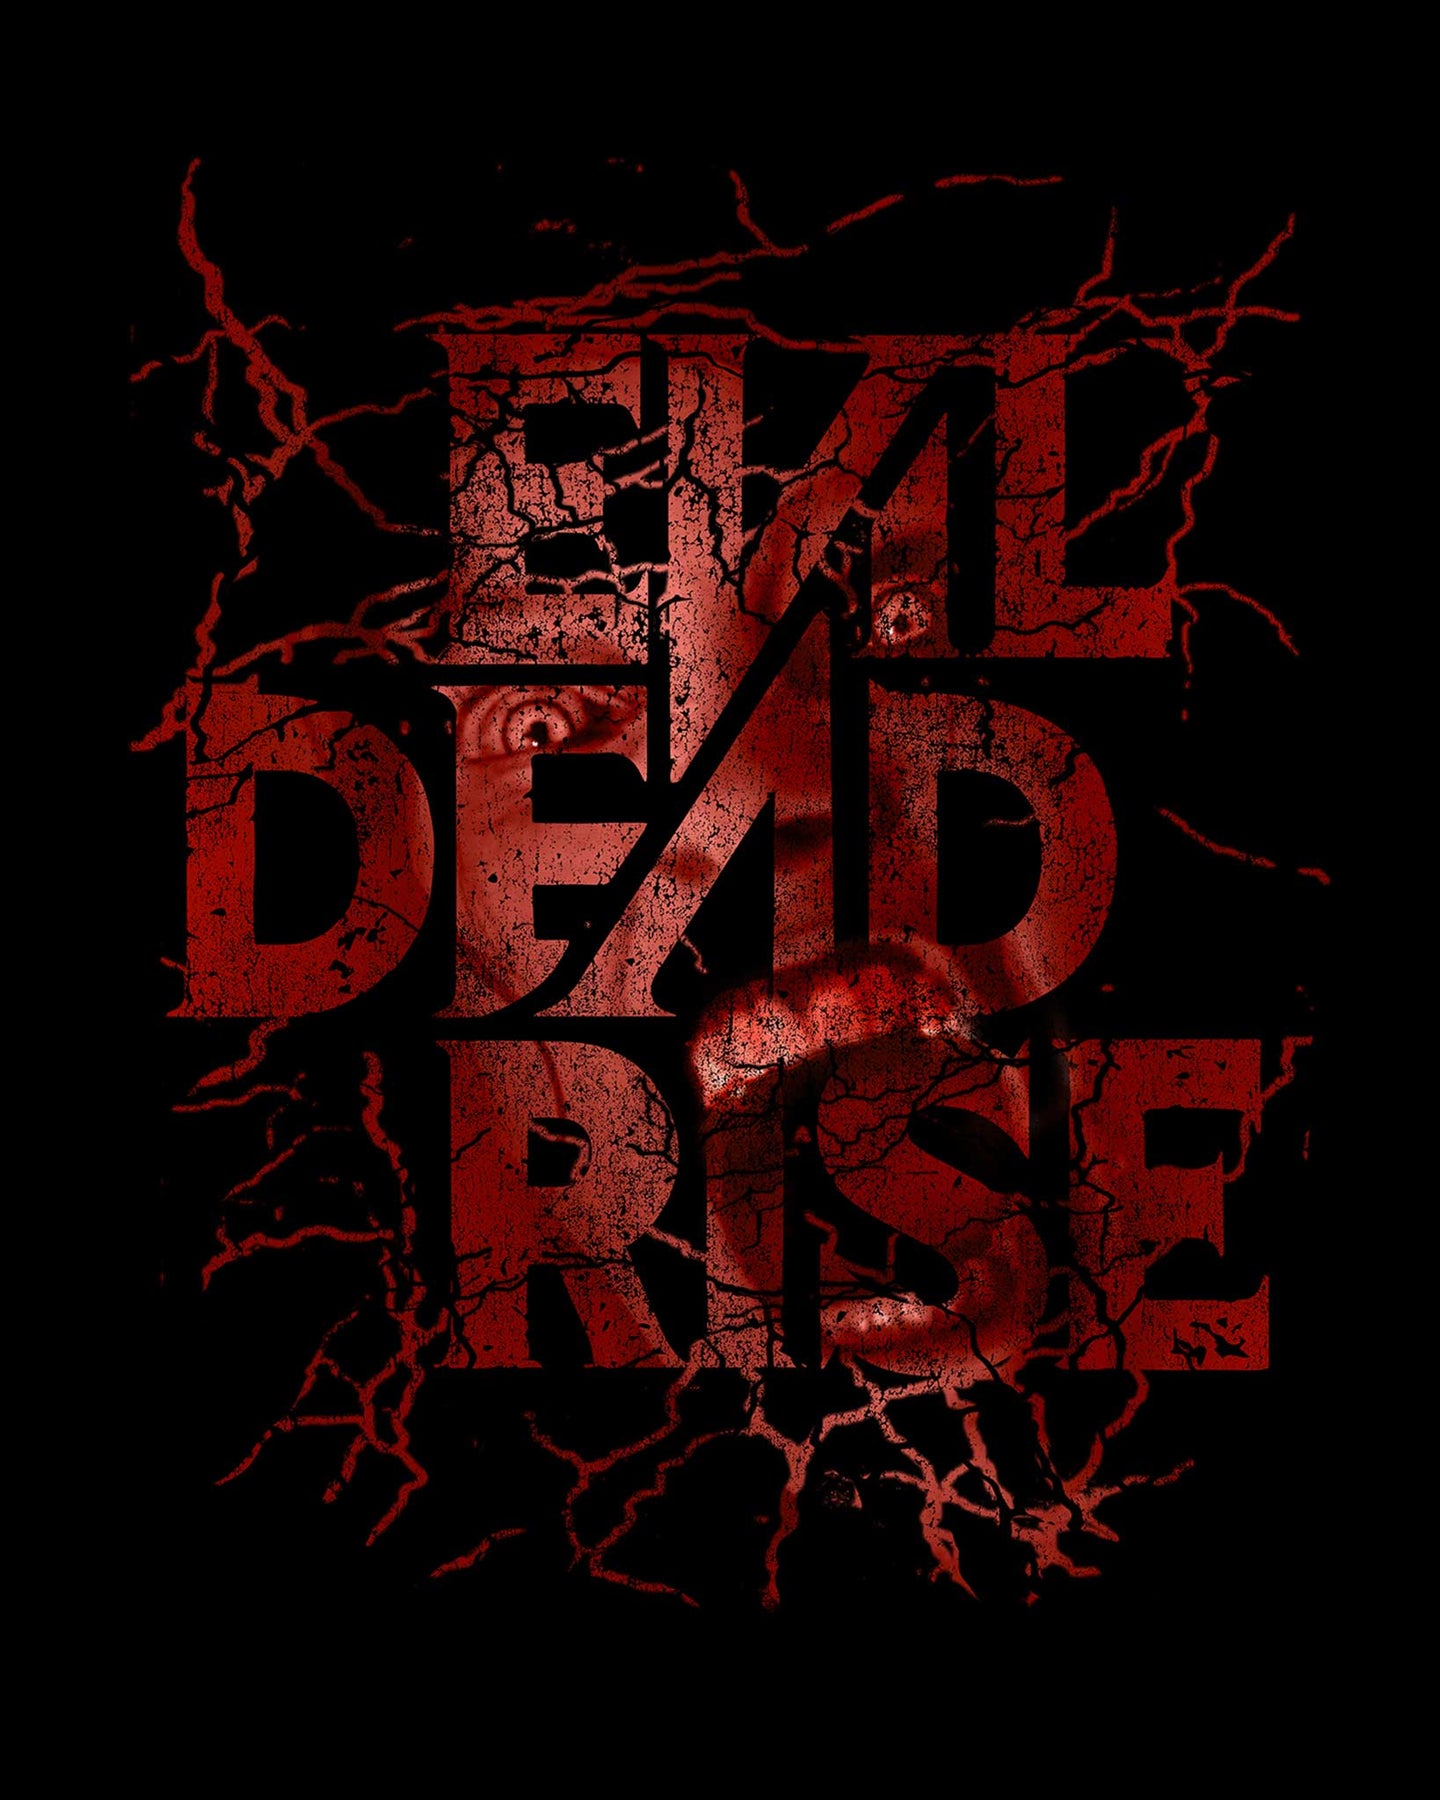 268: Evil Dead Rise (2023)